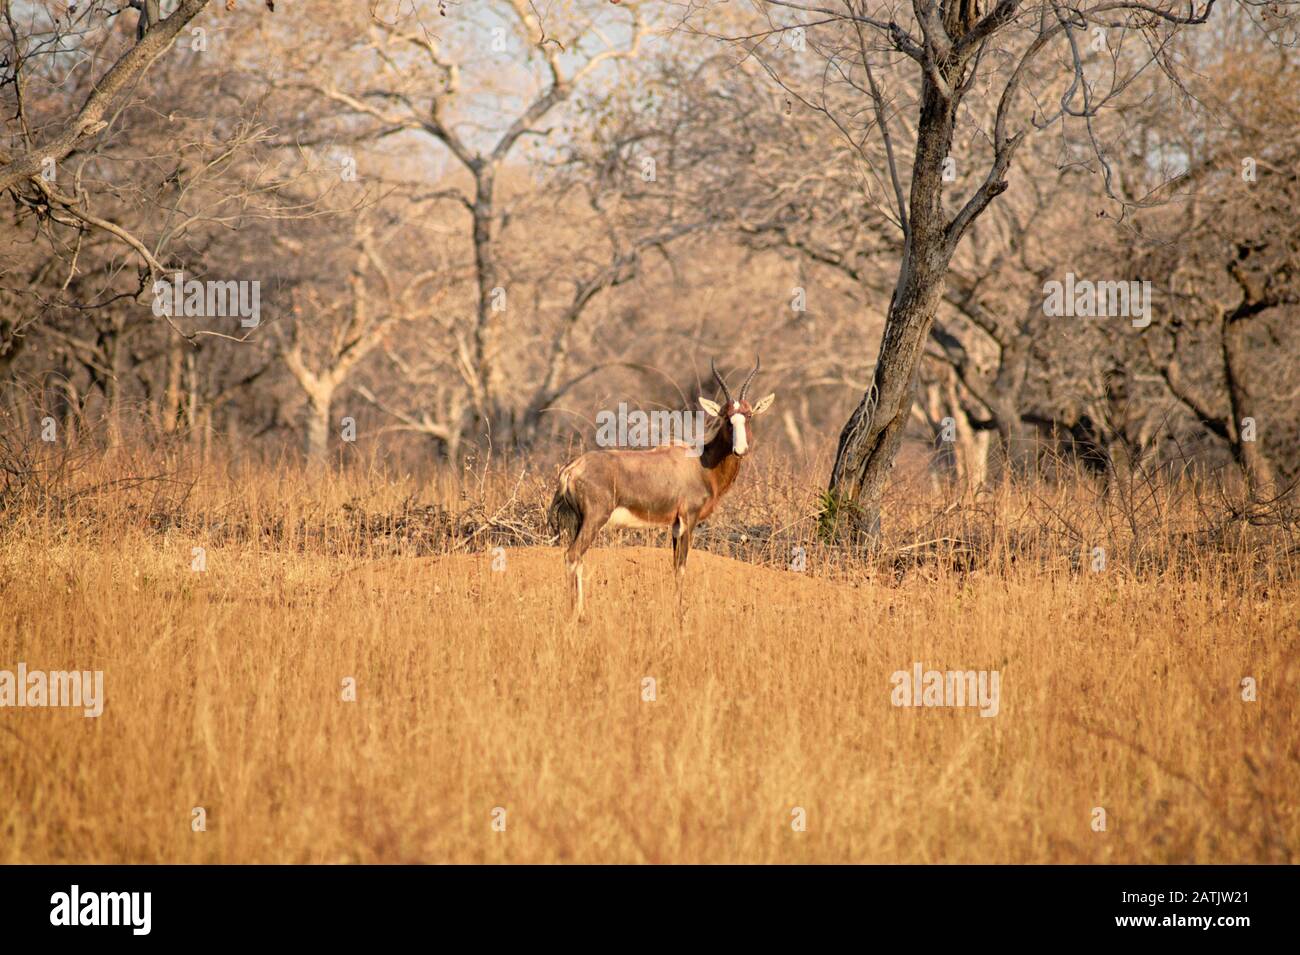 Blesbuck de pie en la sabana seca con árboles barenaked en el fondo Foto de stock